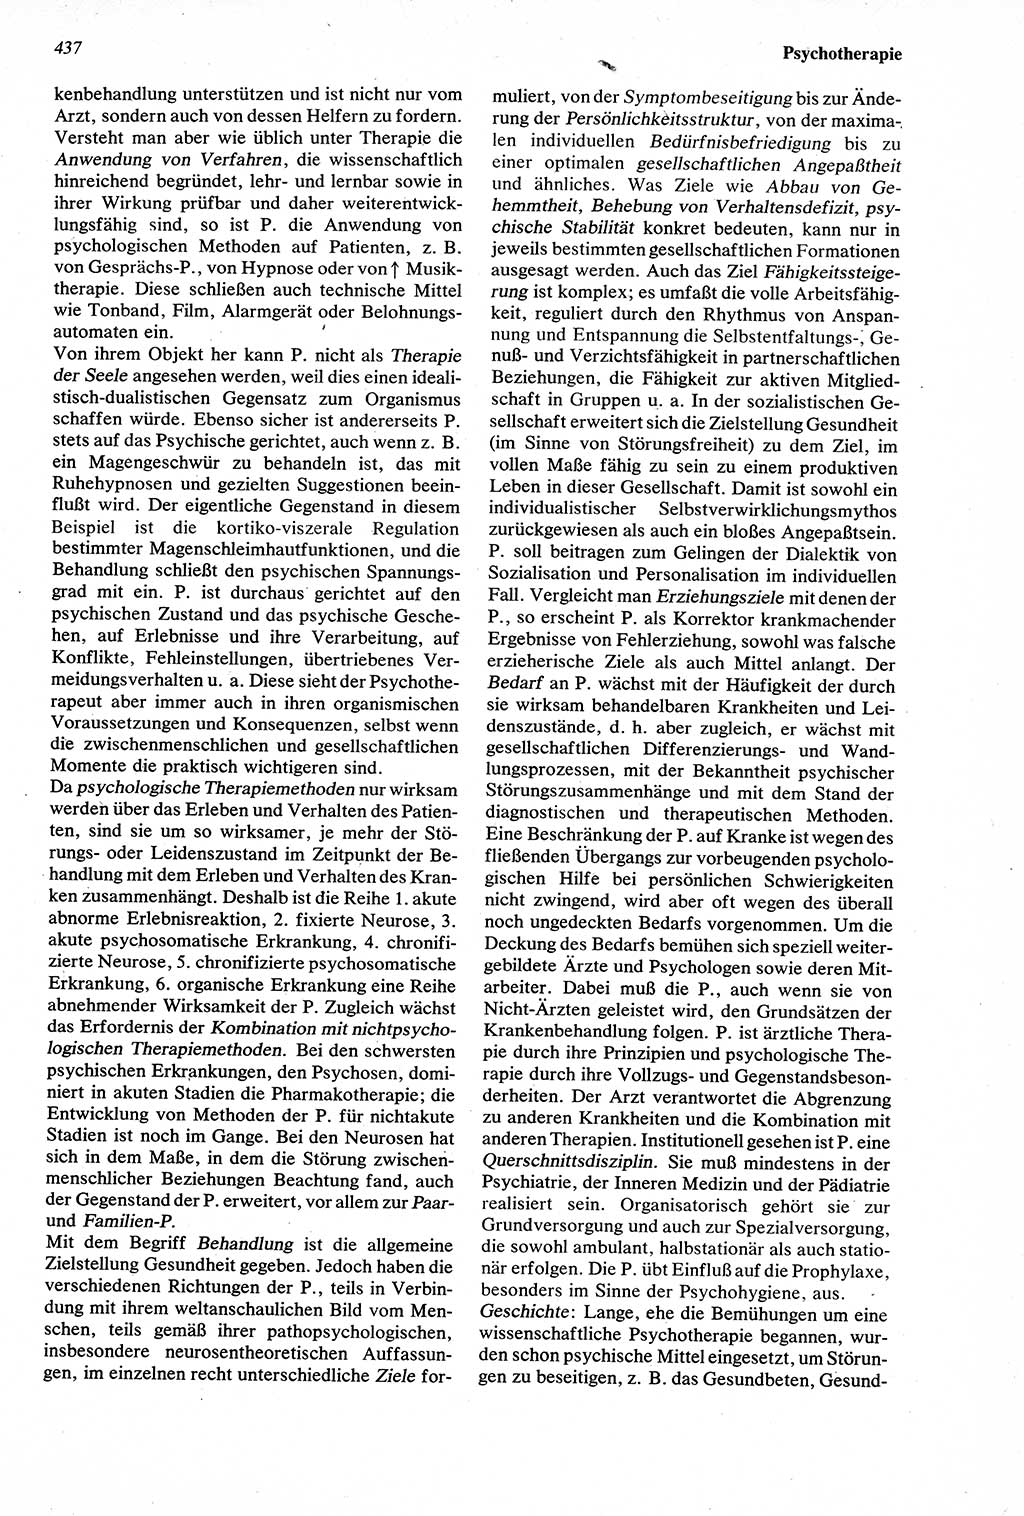 Wörterbuch der Psychologie [Deutsche Demokratische Republik (DDR)] 1976, Seite 437 (Wb. Psych. DDR 1976, S. 437)